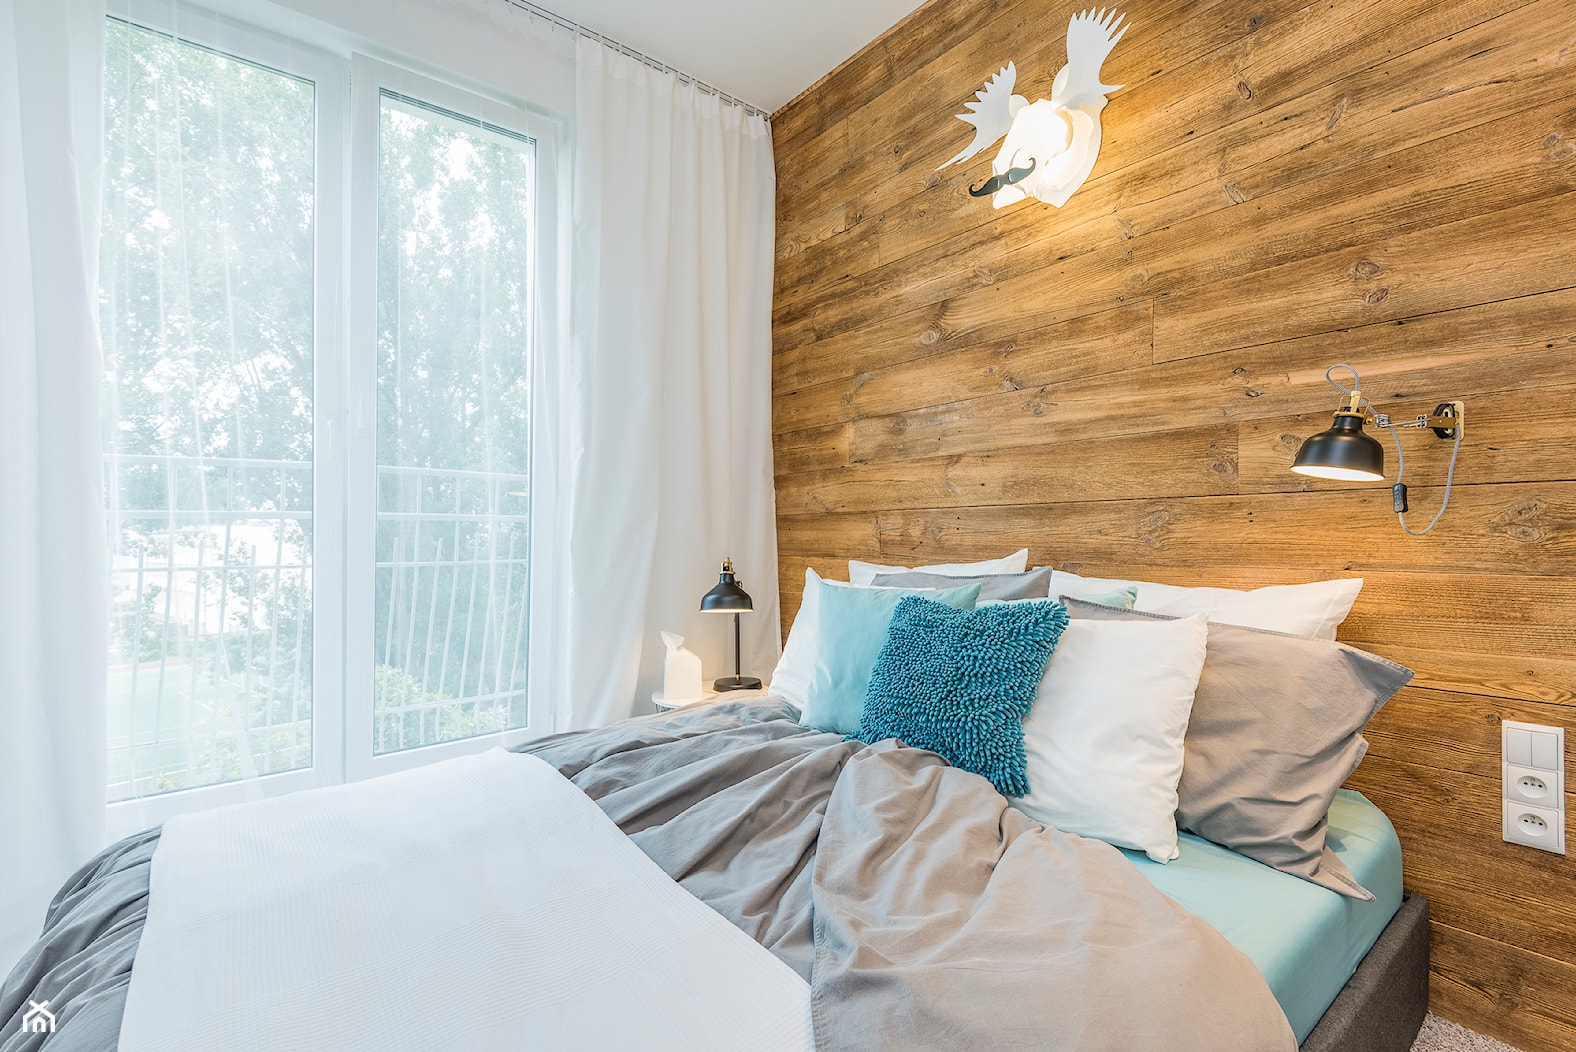 LIVING BOX - Średnia biała sypialnia z balkonem / tarasem, styl skandynawski - zdjęcie od Dauksza Foto - Homebook